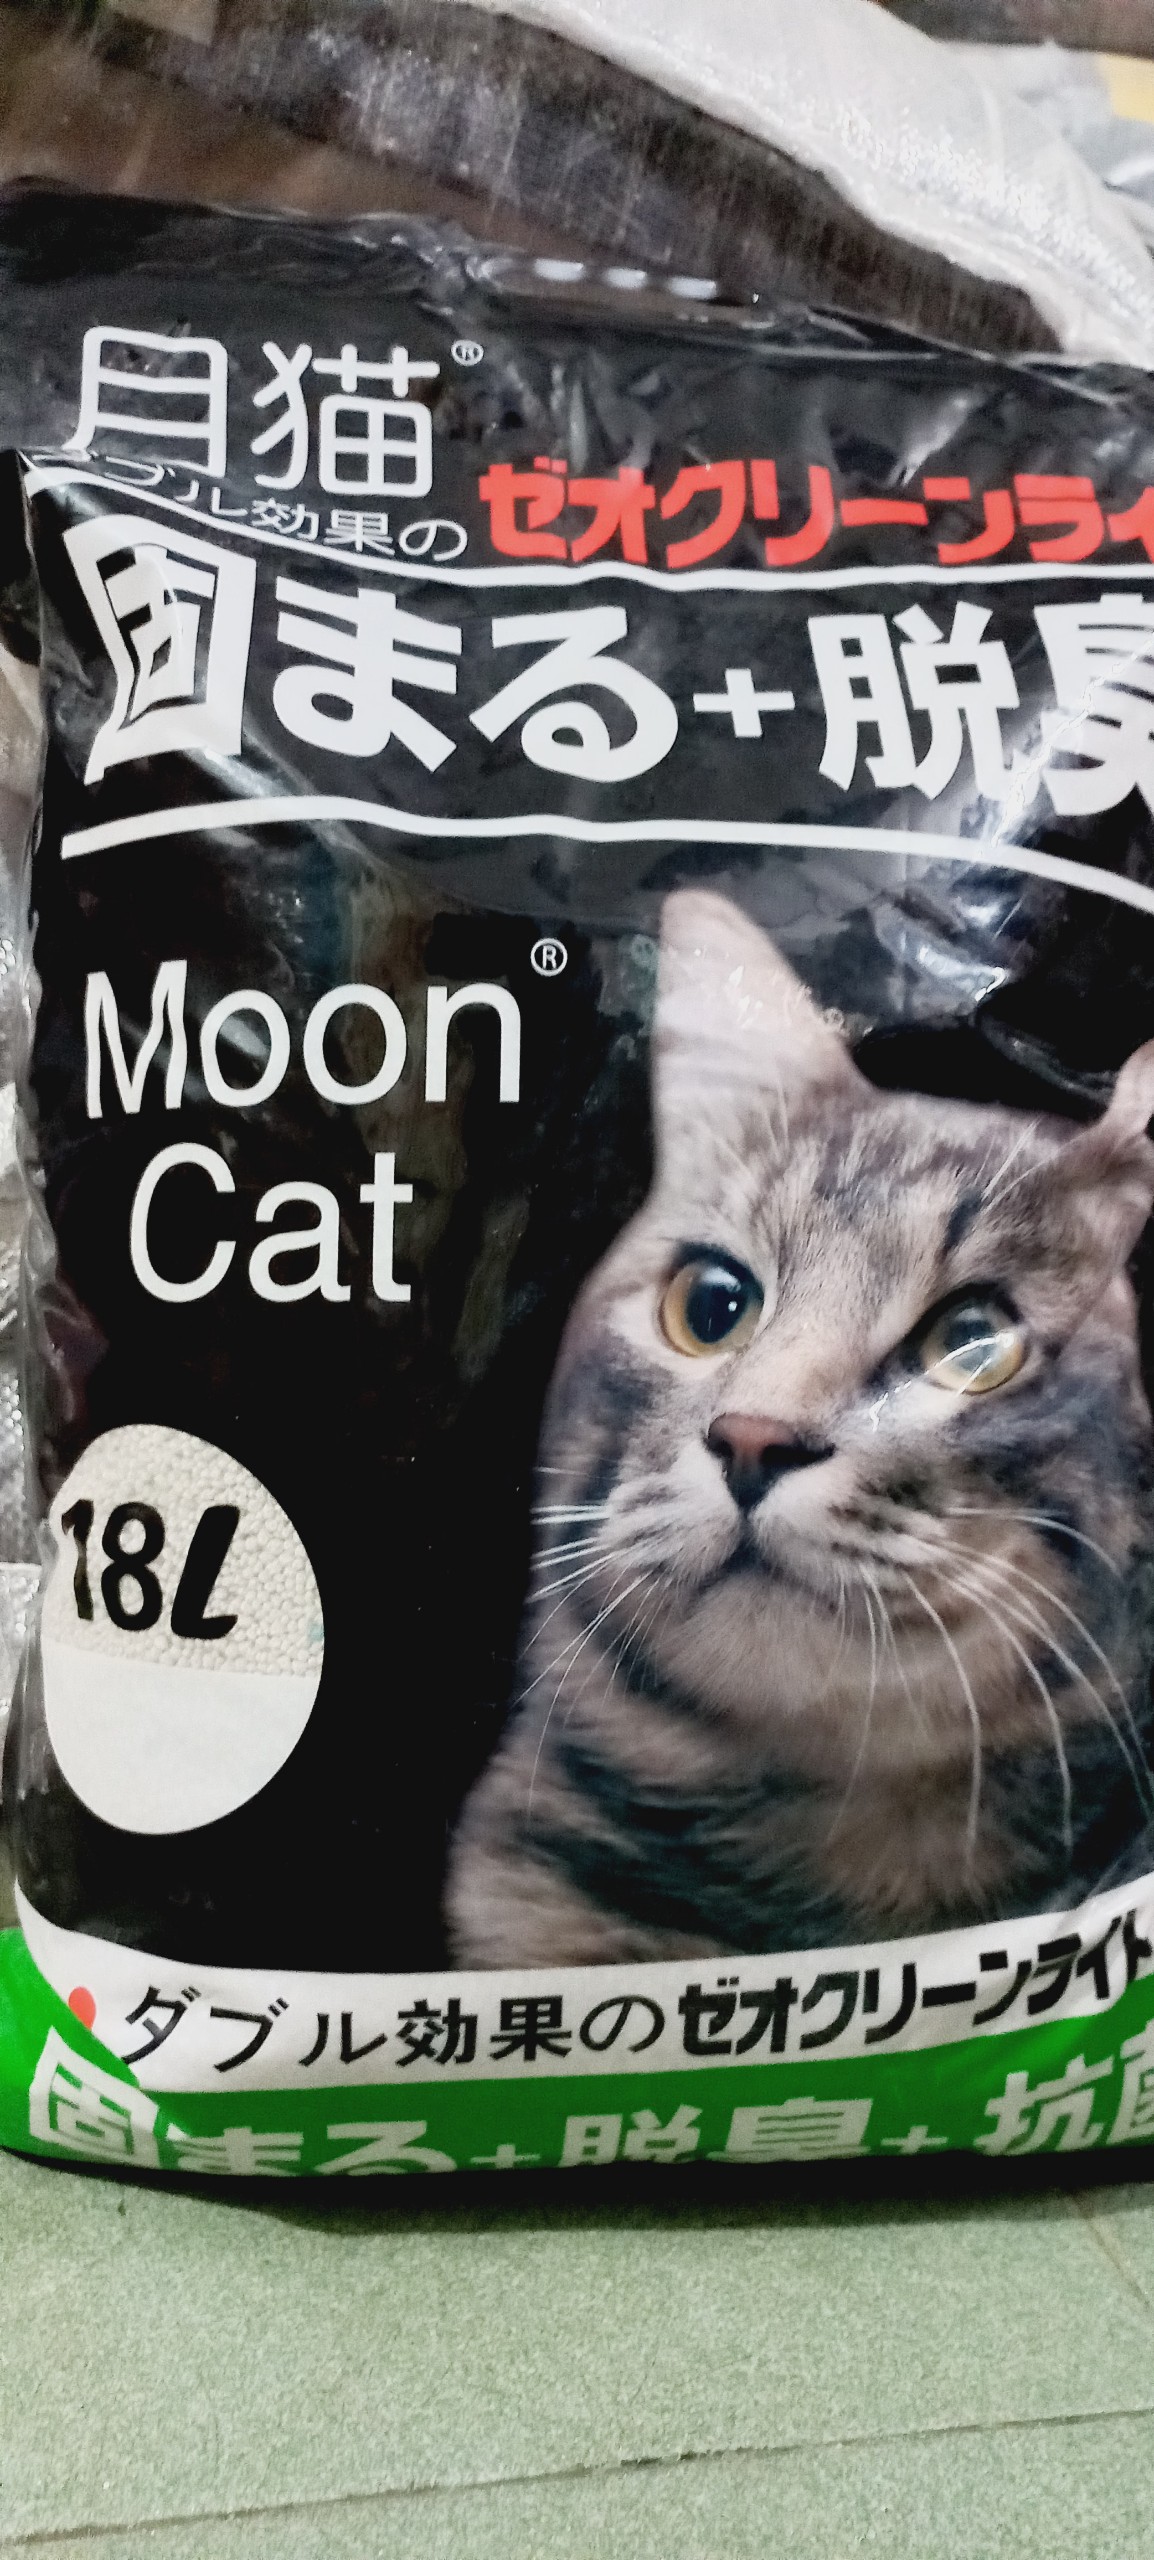 Cát mèo, Cát vệ sinh cho mèo Cát Nhật Đen Moon Cat 16L, 18L